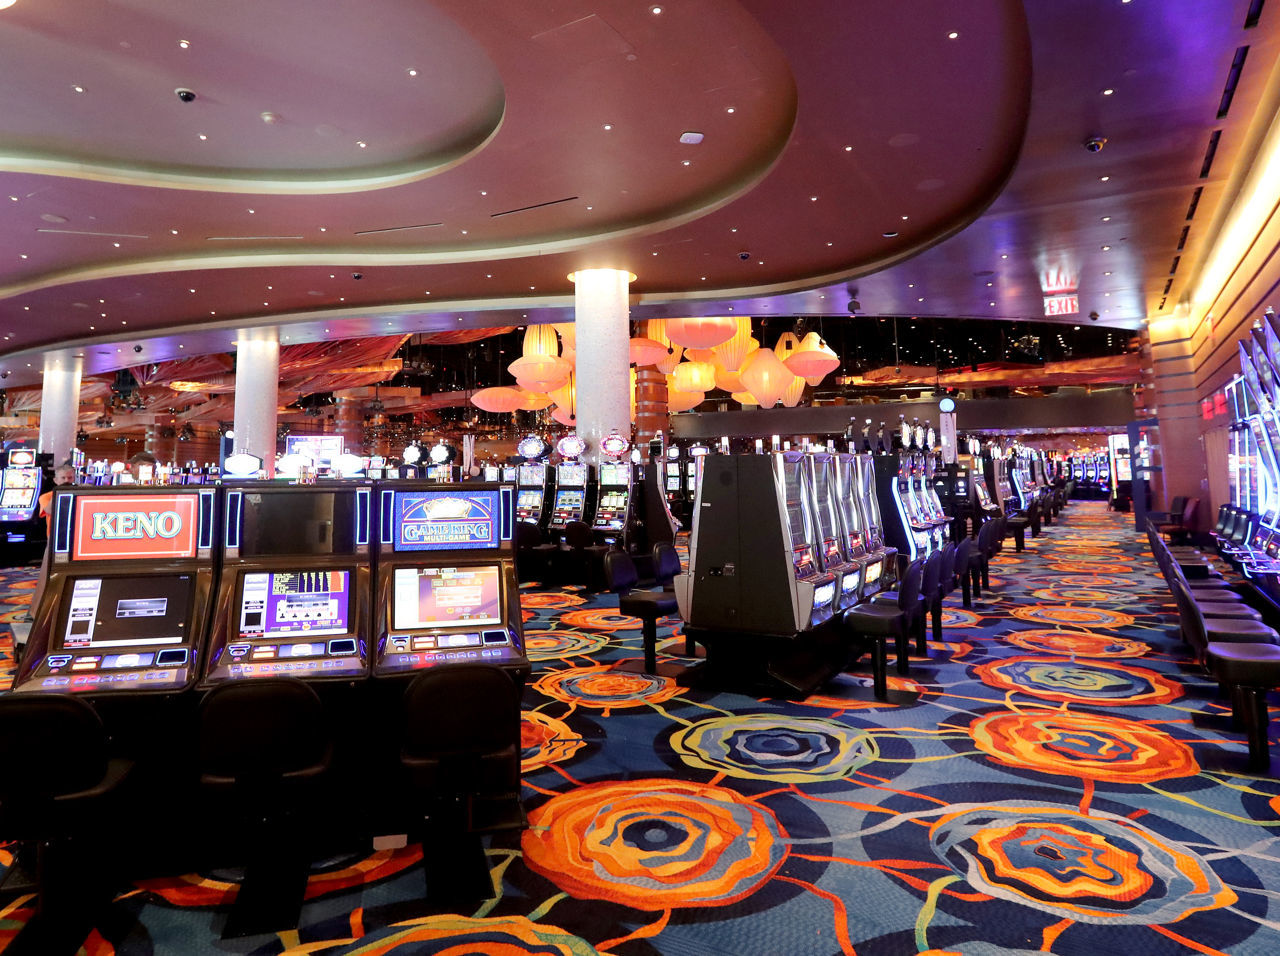 ocean resort online casino promo code